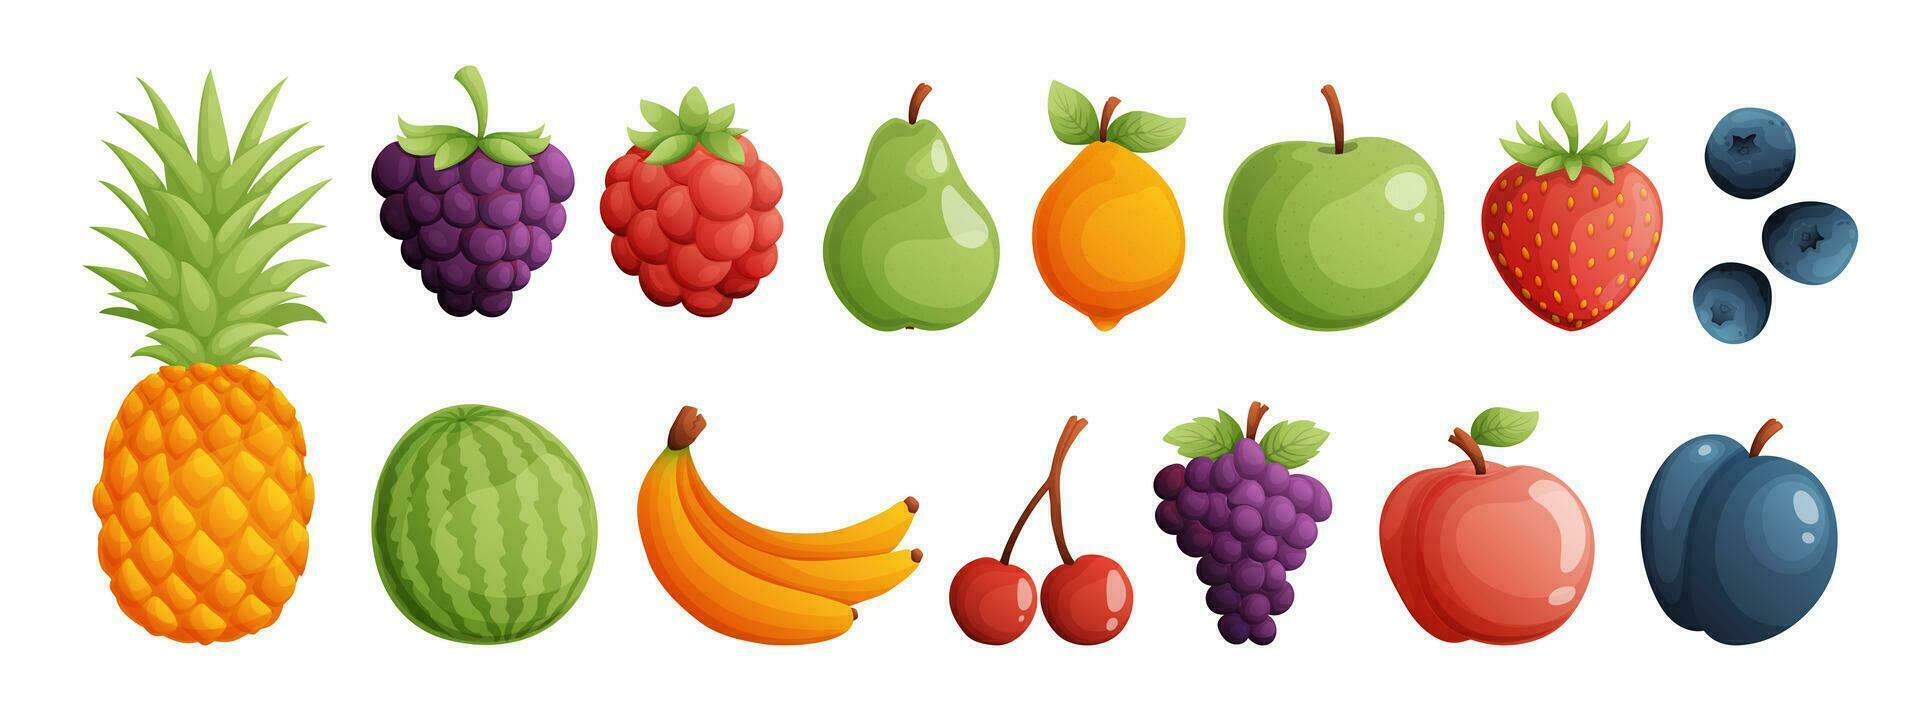 uma conjunto do frutas consistindo do abacaxi, framboesa, mirtilo, pera, limão e maçã. morango, mirtilo, melancia, banana, cereja, uva, pêssego e ameixa. detalhado desenho animado estilo vetor. vetor